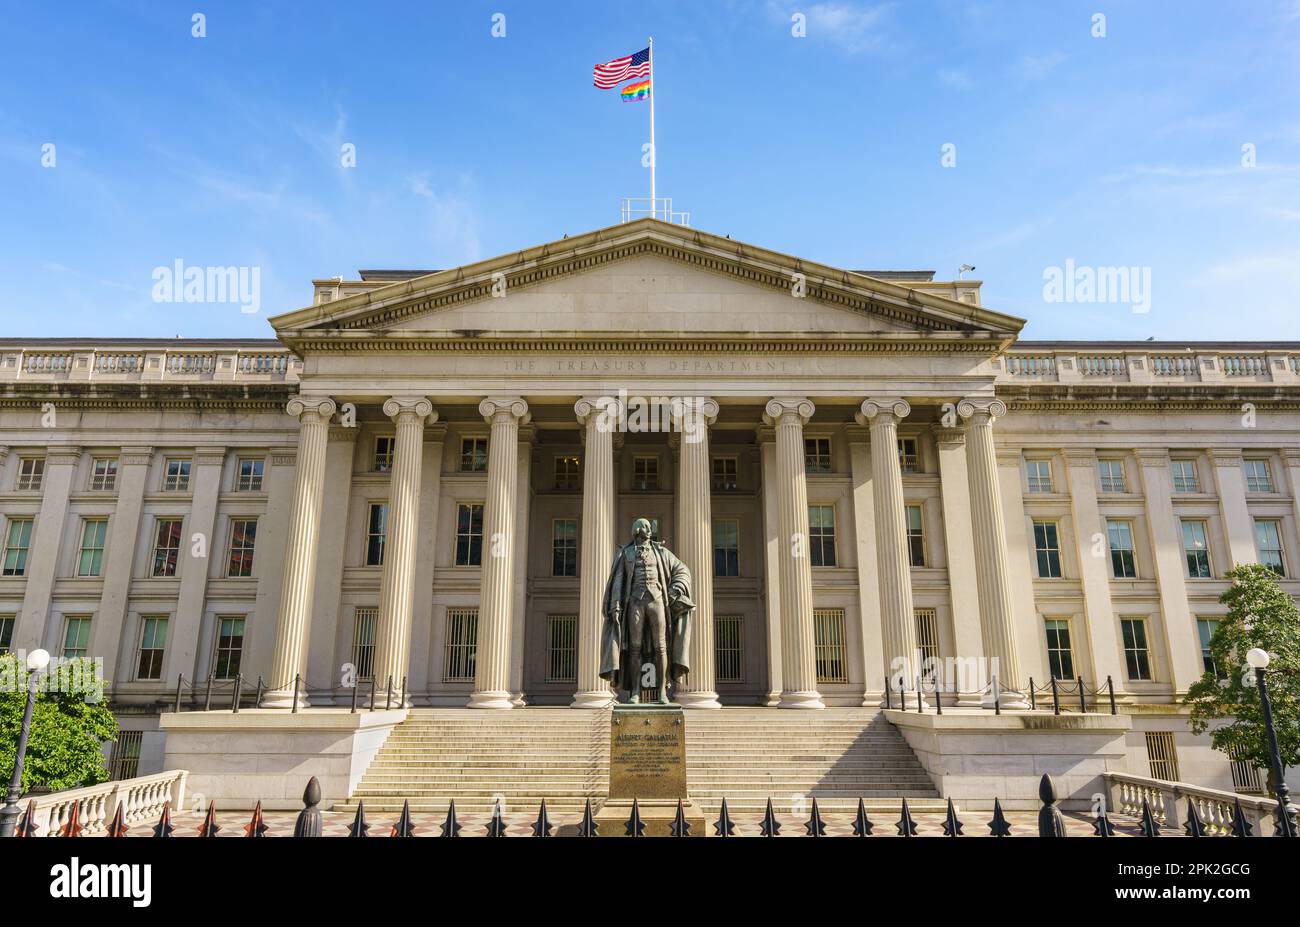 Treasury Building à Washington, D.C., États-Unis. Département du Trésor des États-Unis. Entrée nord avec la statue d'Albert Gallatin. Banque D'Images